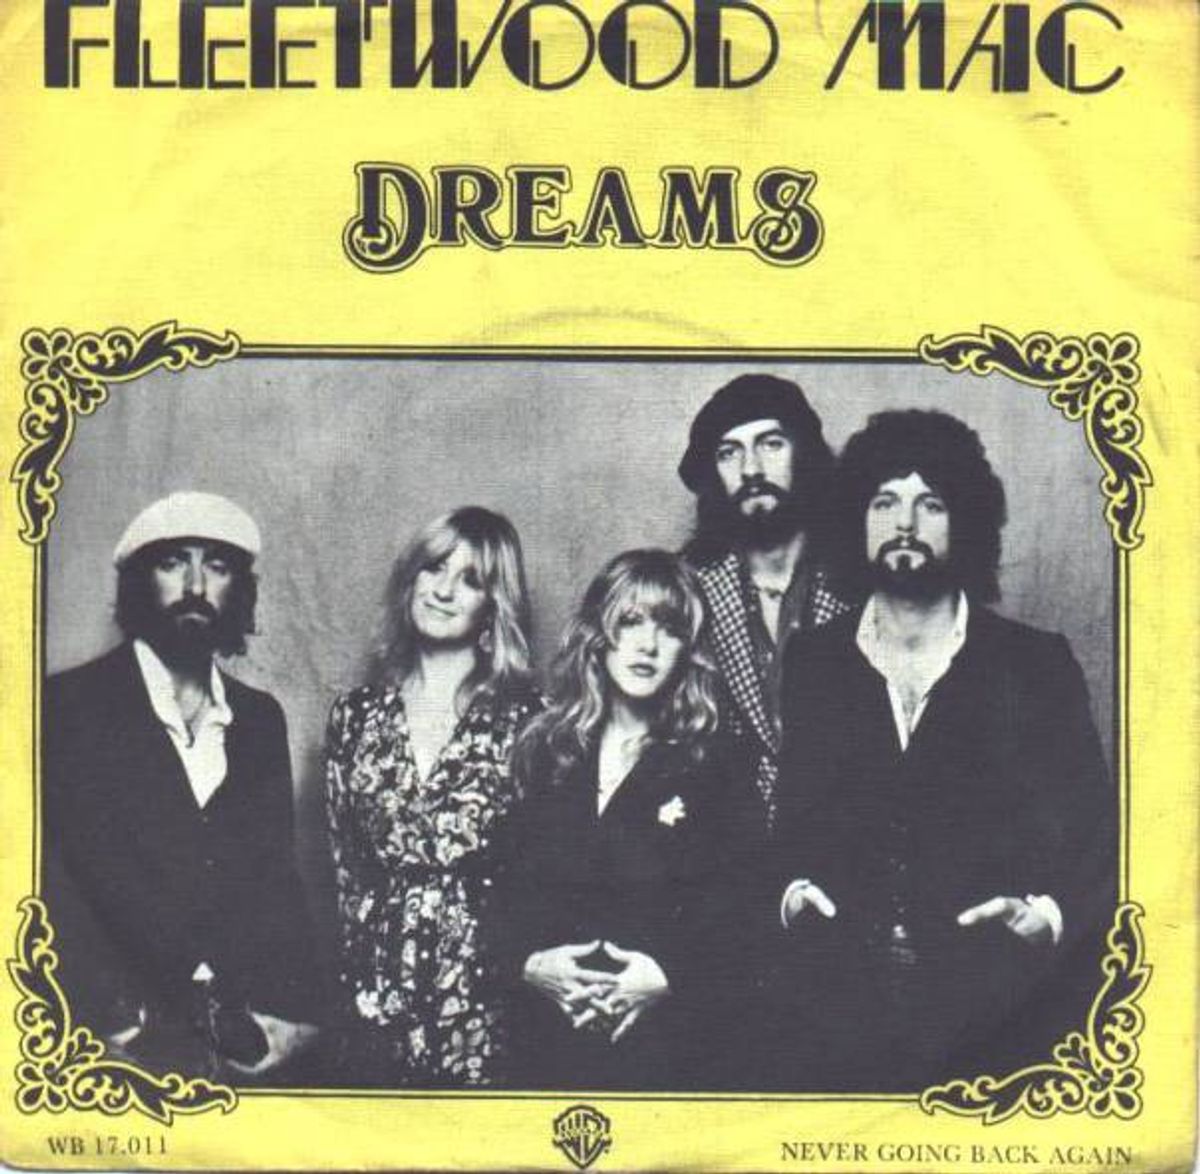 #Dromenland - Fleetwood Mac - Dreams (1976)